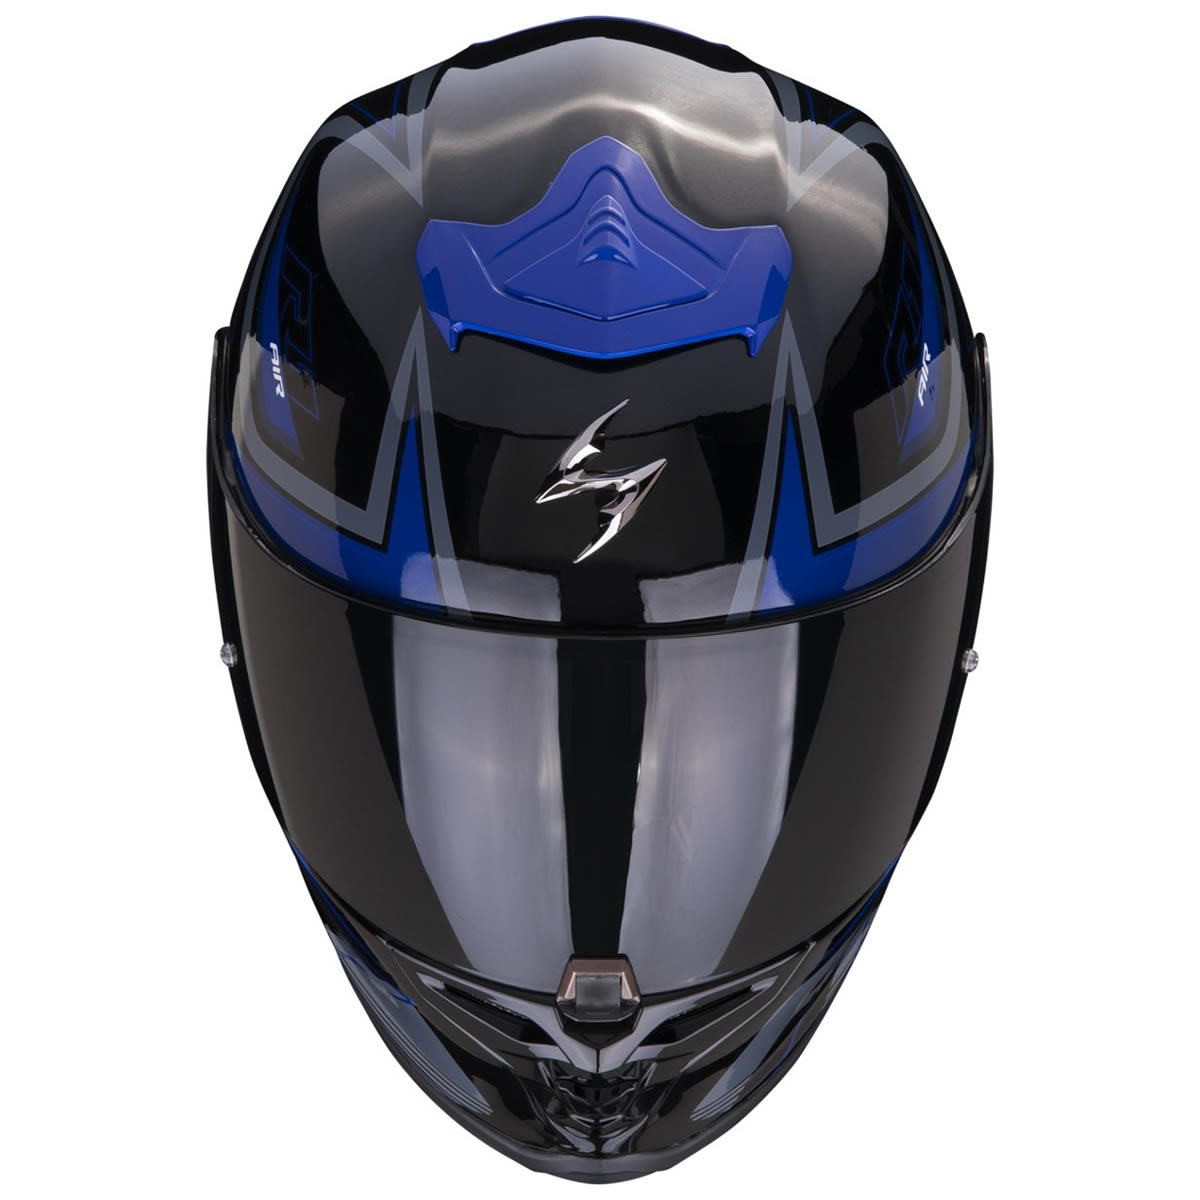 Scorpion Helm EXO-R1 EVO Air Gaz, schwarz-blau